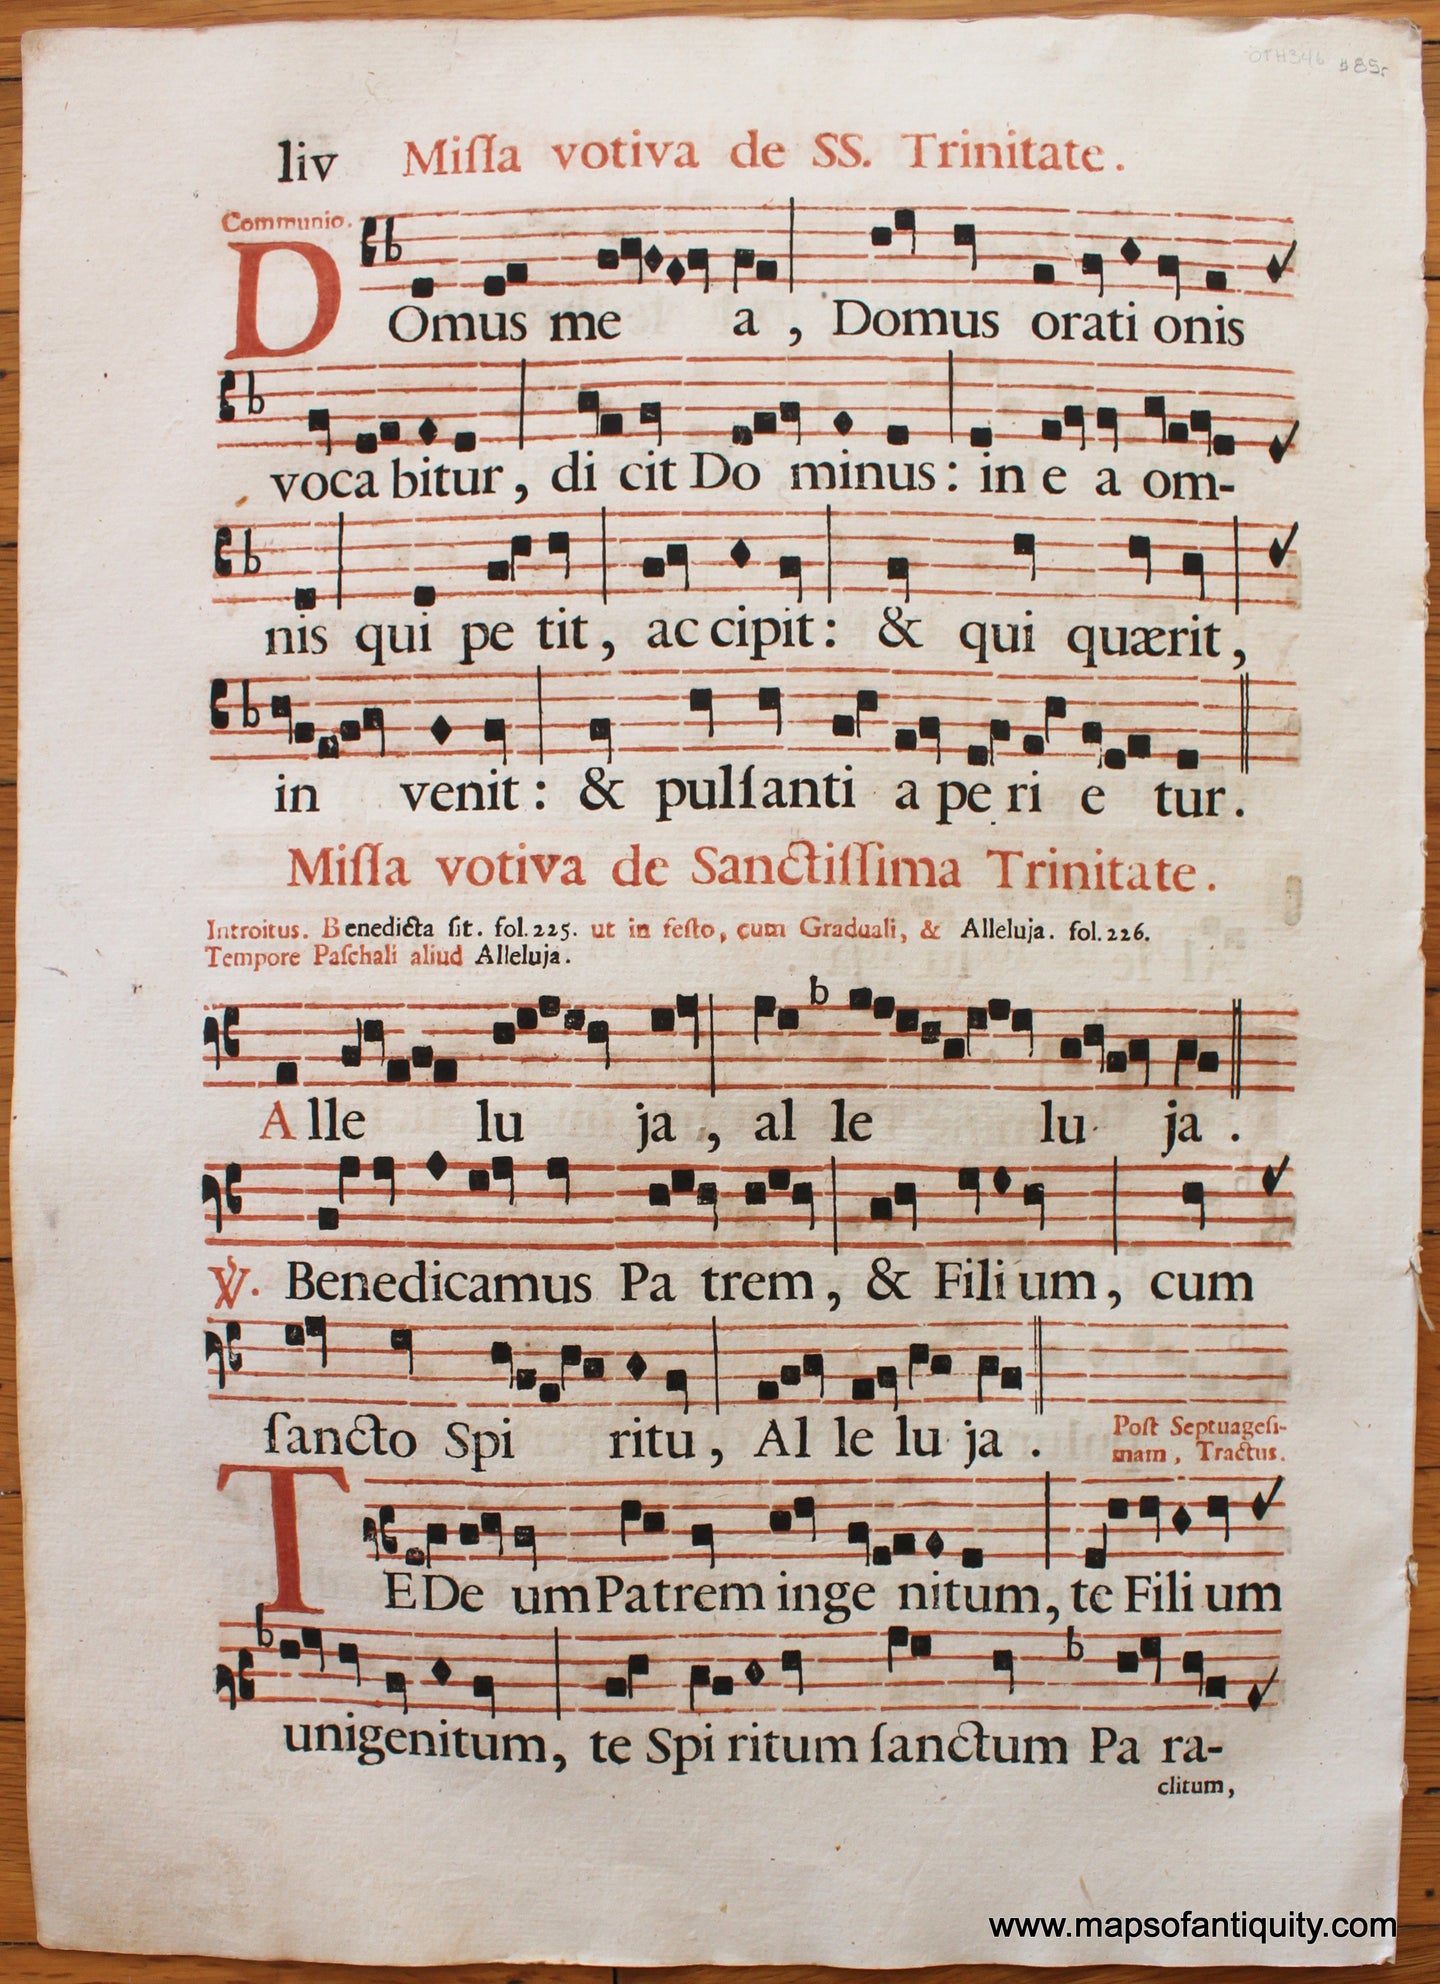 Antique-Sheet-Music-on-Paper-Antique-Sheet-Music-Missa-votiva-de-Sactissima-Trinitate-c.-16th-century-Unknown-Antique-Sheet-Music-1500s-16th-century-Maps-of-Antiquity